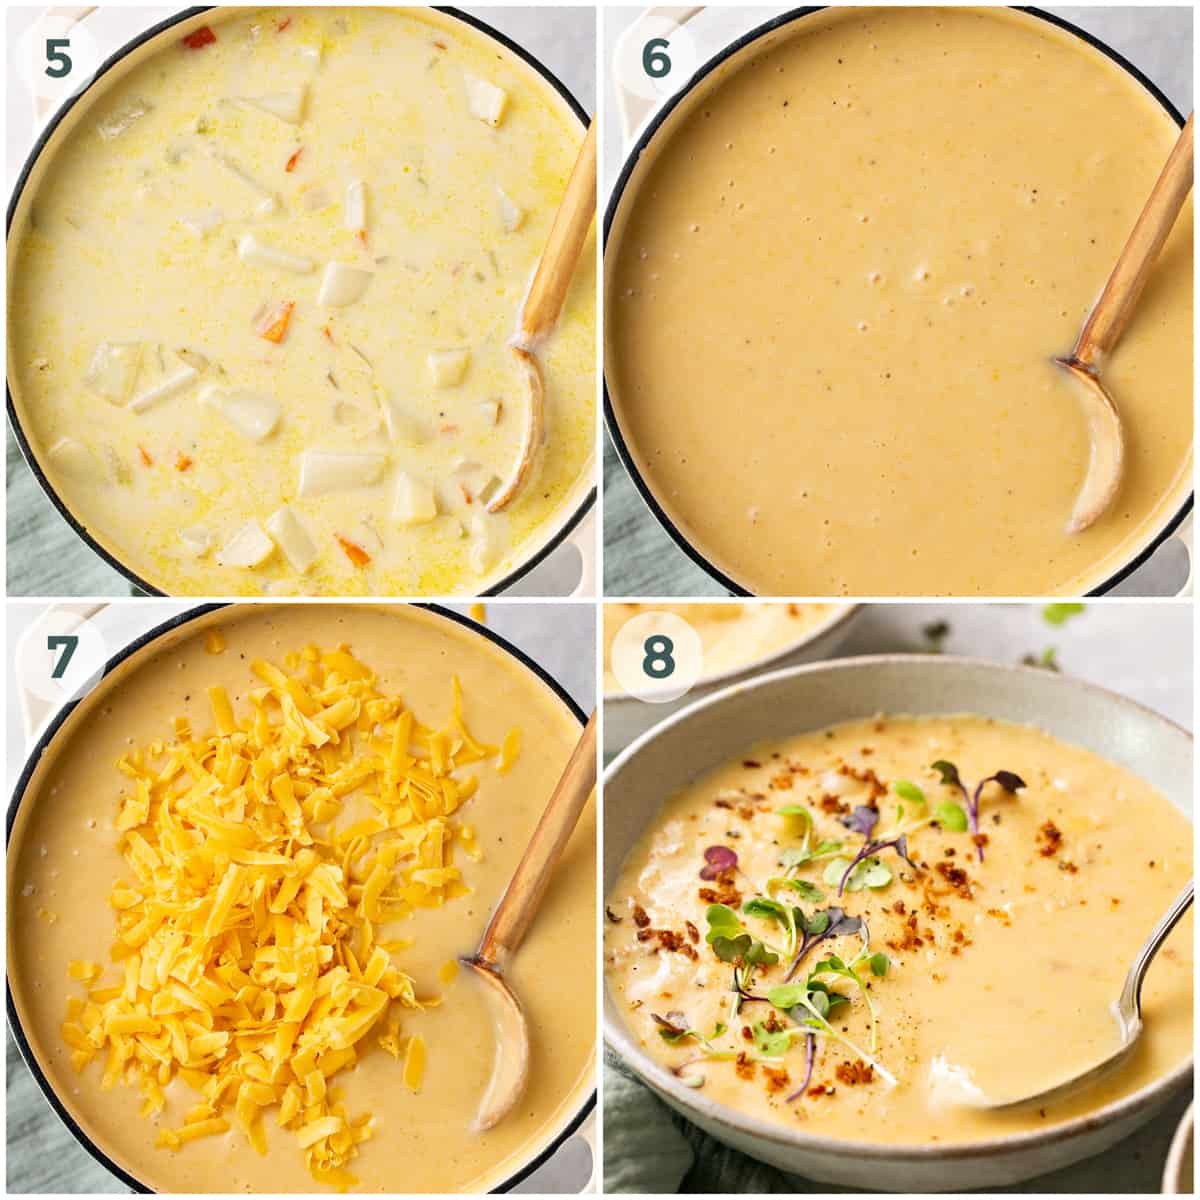 passaggi 5-8 della preparazione della ricetta della zuppa di patate